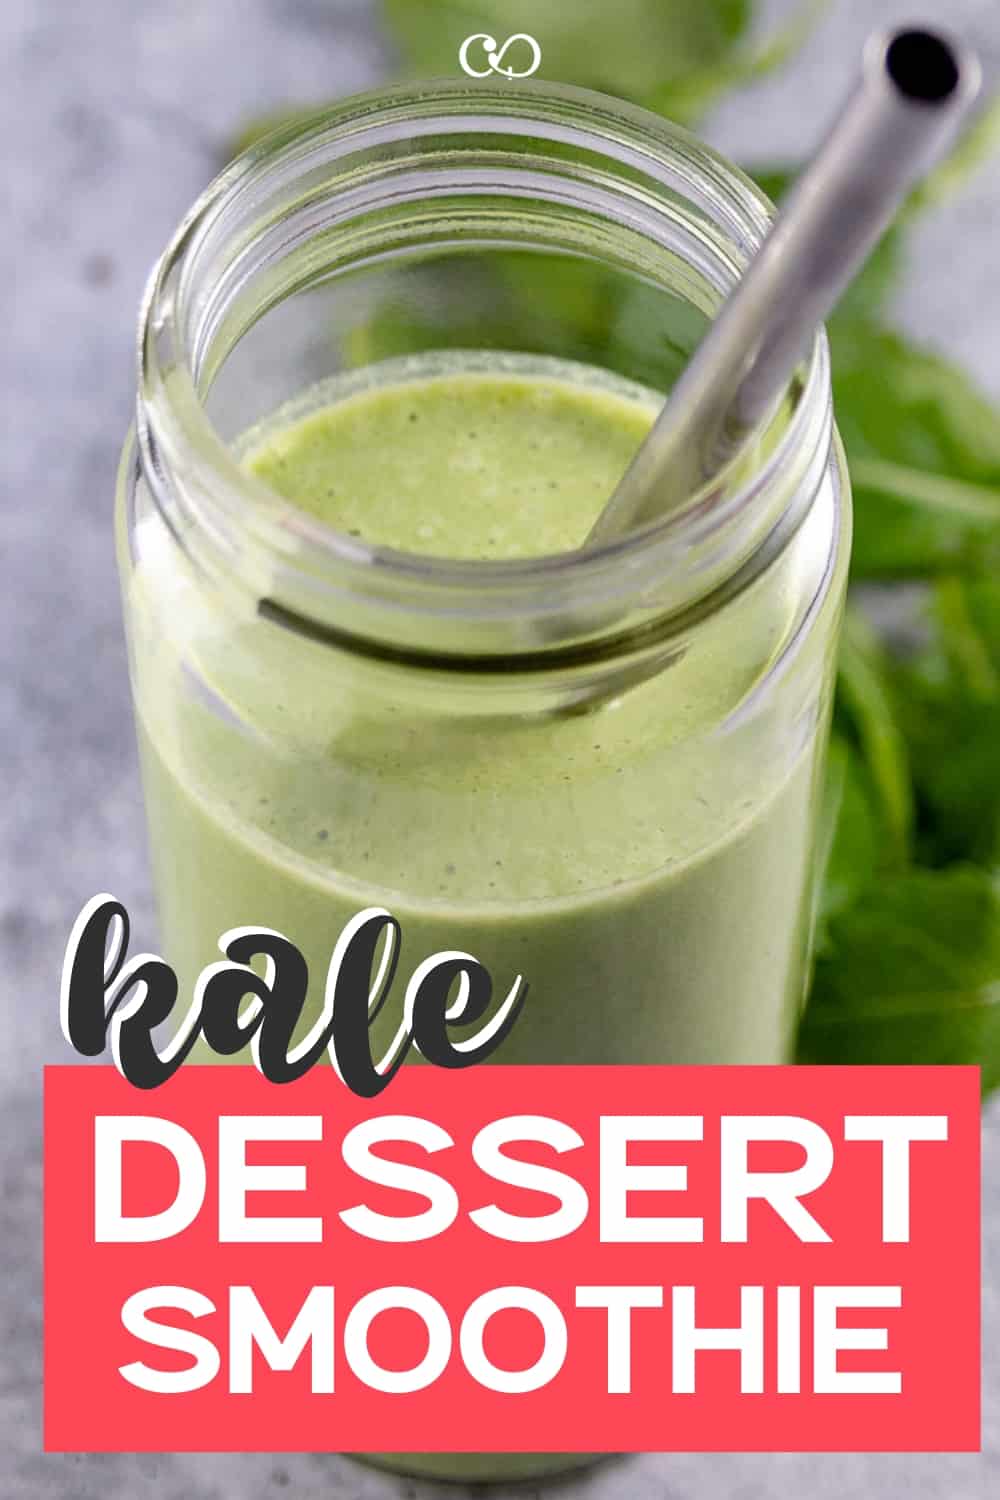 A glass of Kale Dessert Smothie